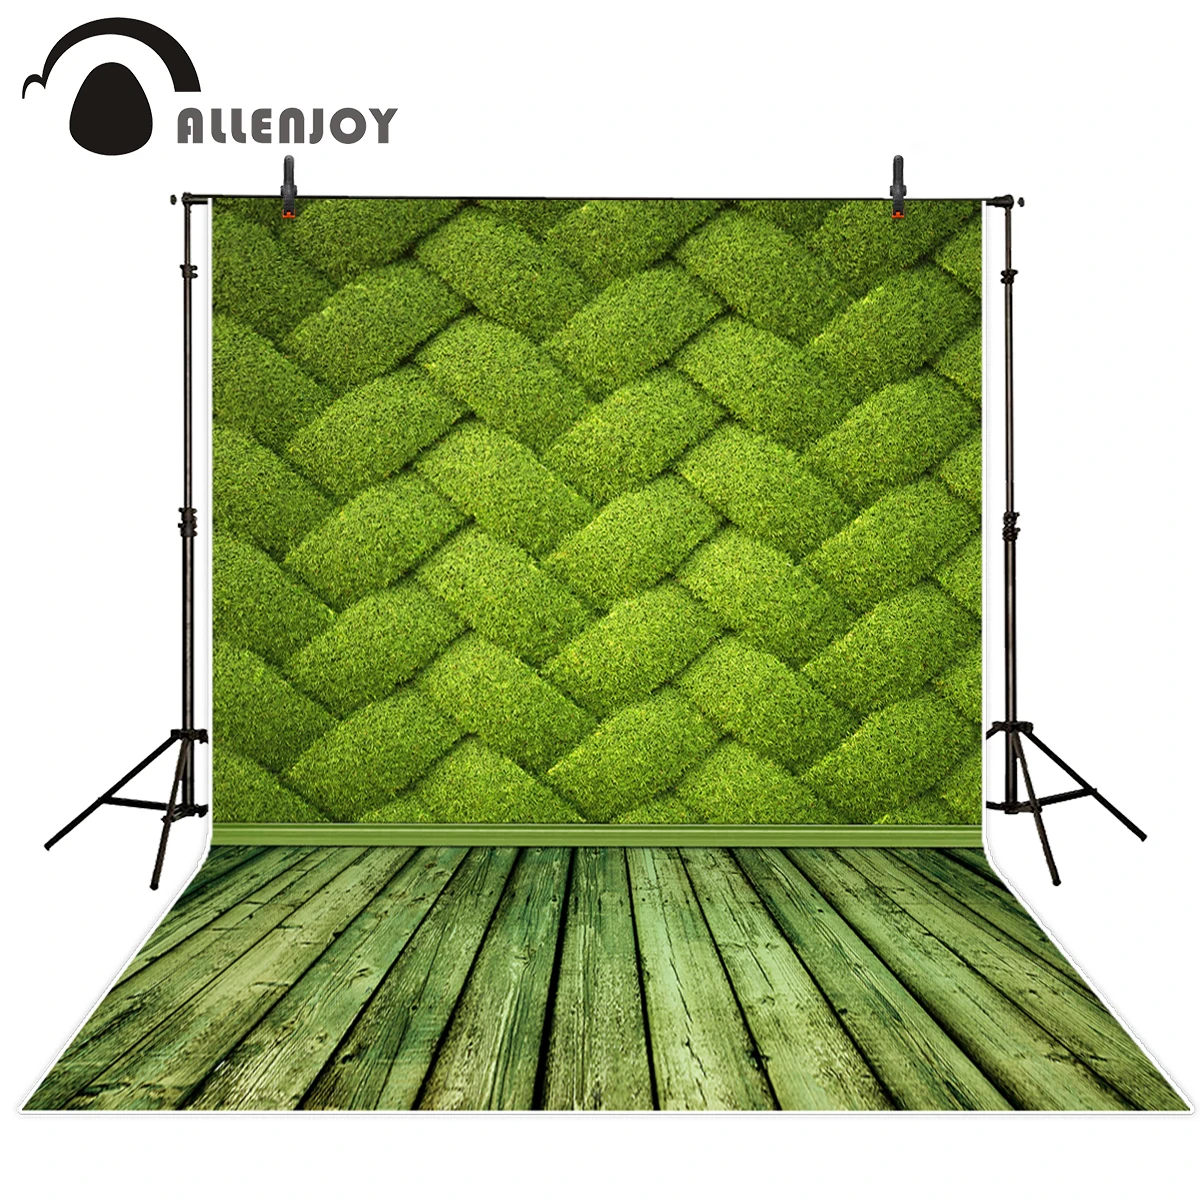 Allenjoy фон для фотосъемки с зеленой травой и текстурой весенний детской фотосессии